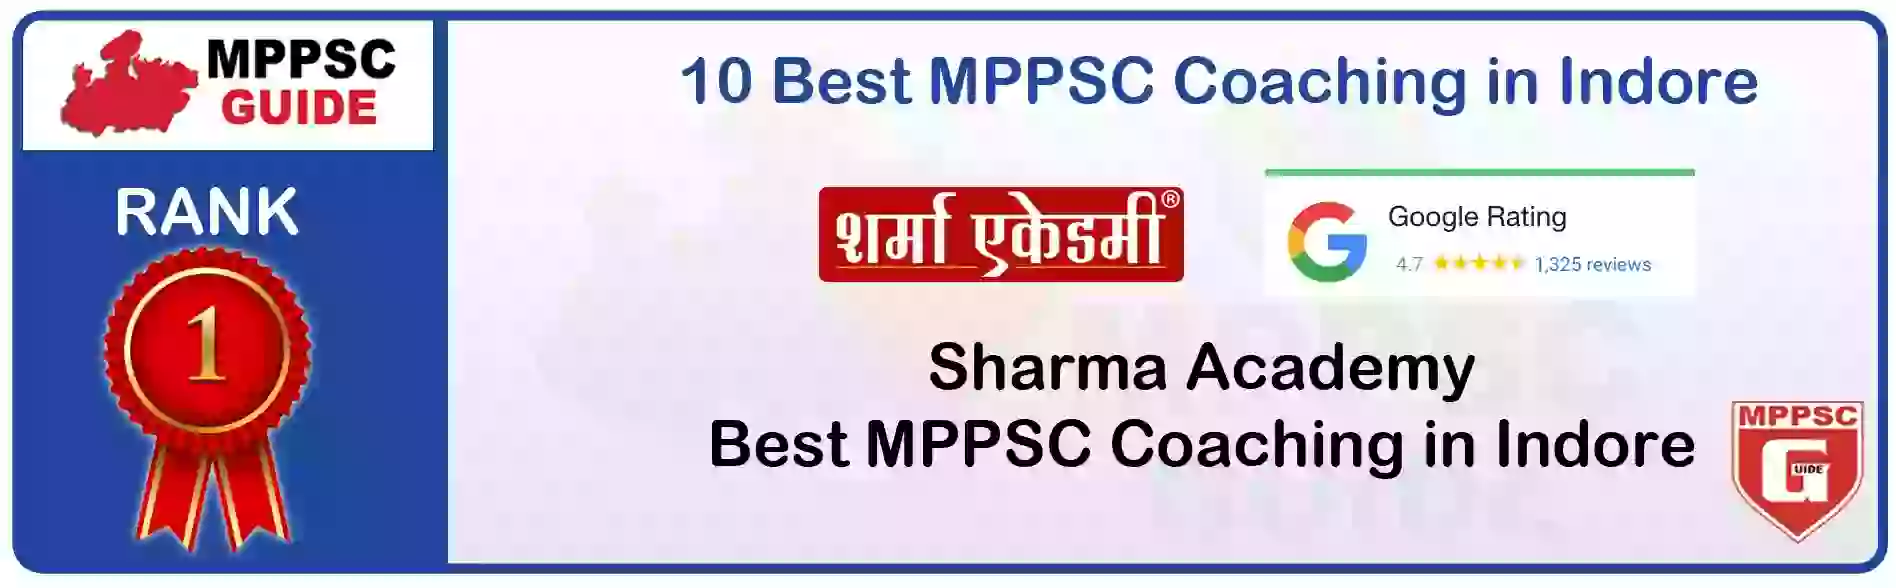 MPPSC Coaching in Sheopur, MPPSC Coaching Institute In Sheopur, Best MPPSC Coaching in Sheopur, Top 10 MPPSC Coaching In Sheopur, best mppsc coaching institute in sheopur, MPPSC Coaching Classes In Sheopur, MPPSC Online Coaching In Sheopur, mppsc coaching in Sheopur bhanwarkua